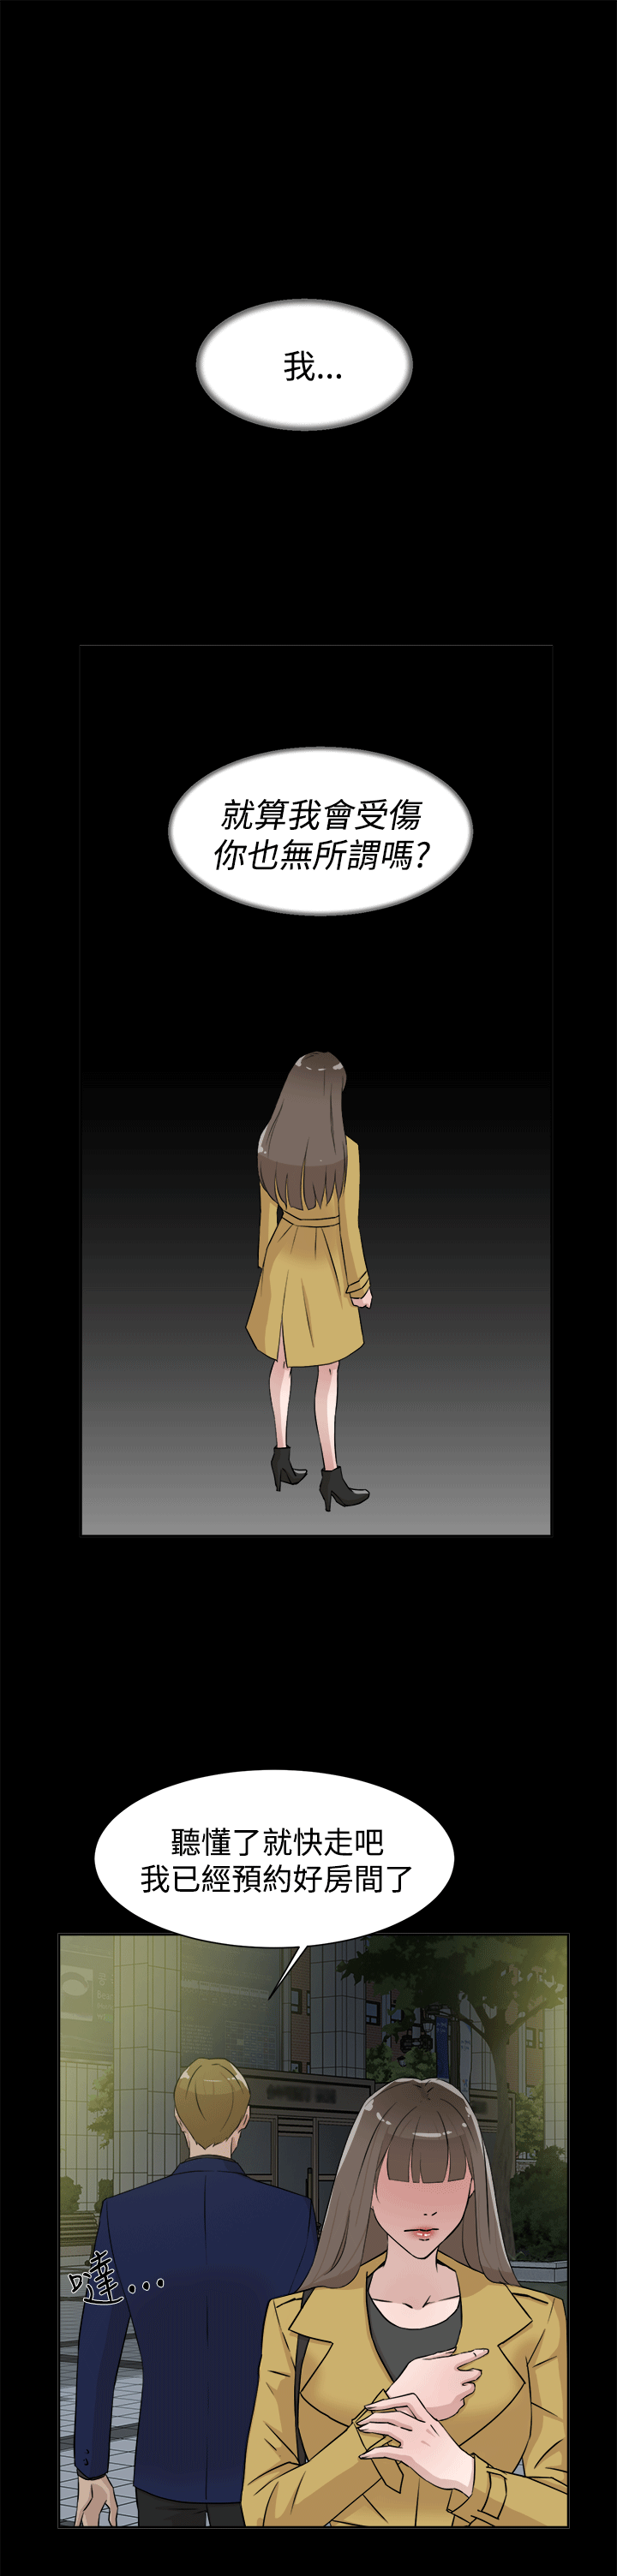 韩国污漫画 她的高跟鞋(無刪減) 第28话 9